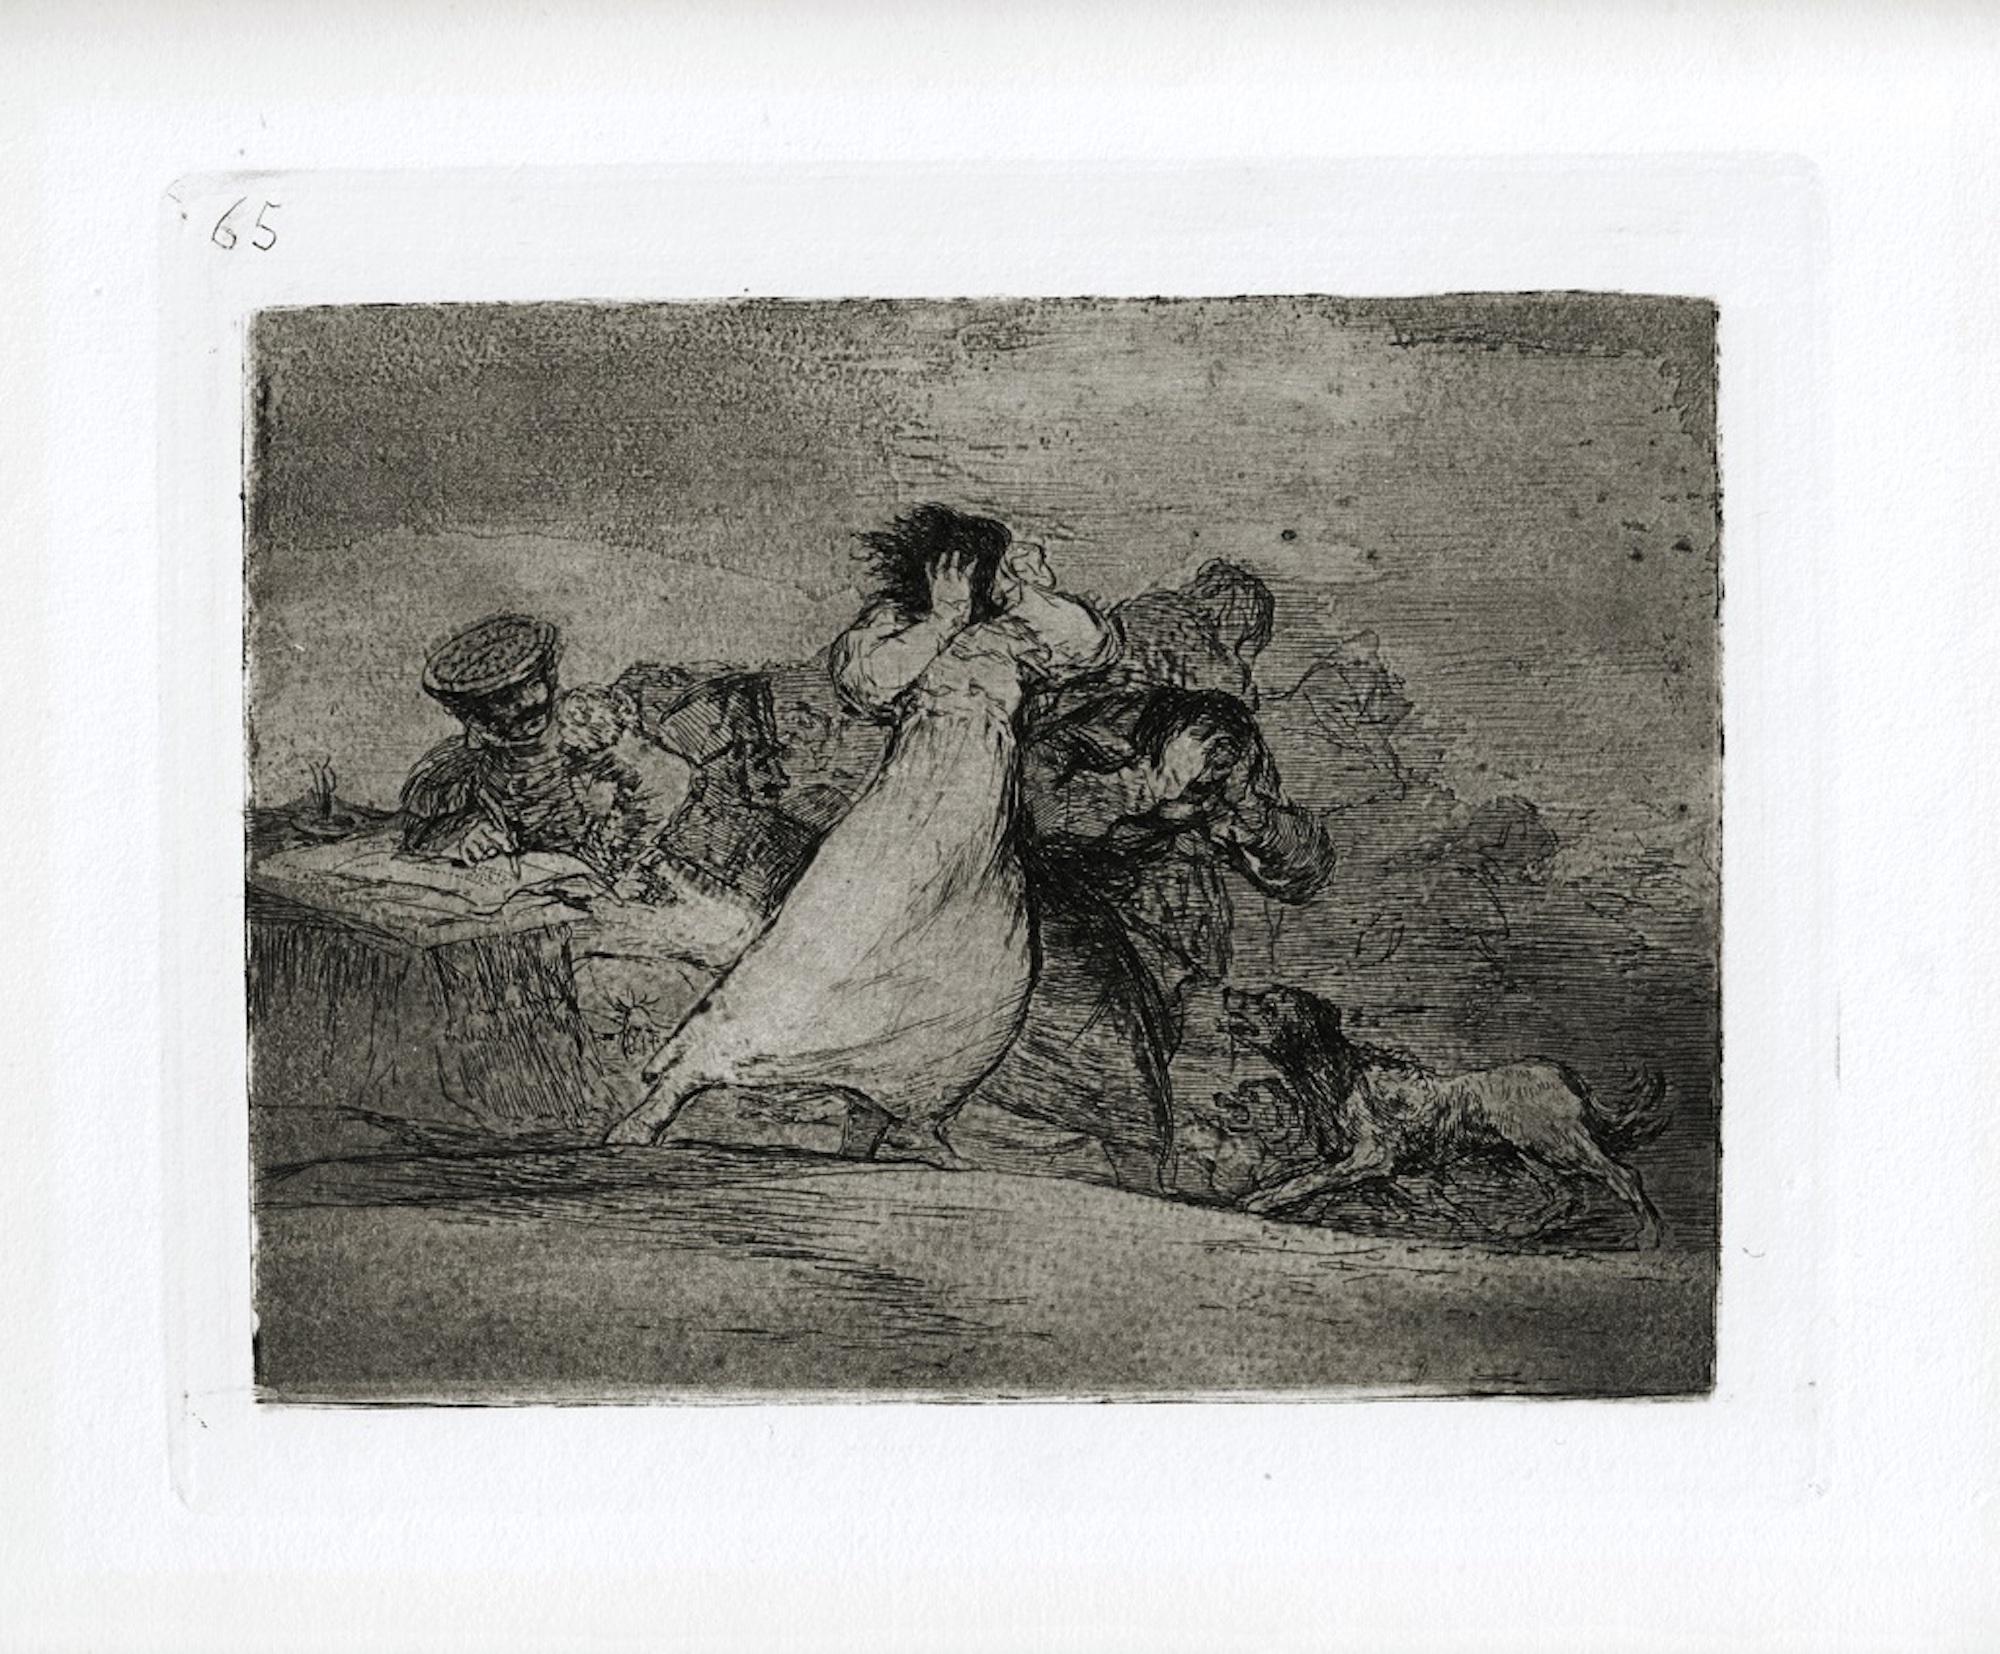 Qué albotoro es éste ist ein Originalkunstwerk des großen spanischen Künstlers Francisco Goya aus dem Jahr 1810. 

Original-Radierung auf Papier. 

Das Werk gehört zu der berühmten Serie "Los Desastres de la Guerra", die in den Jahren des Spanischen